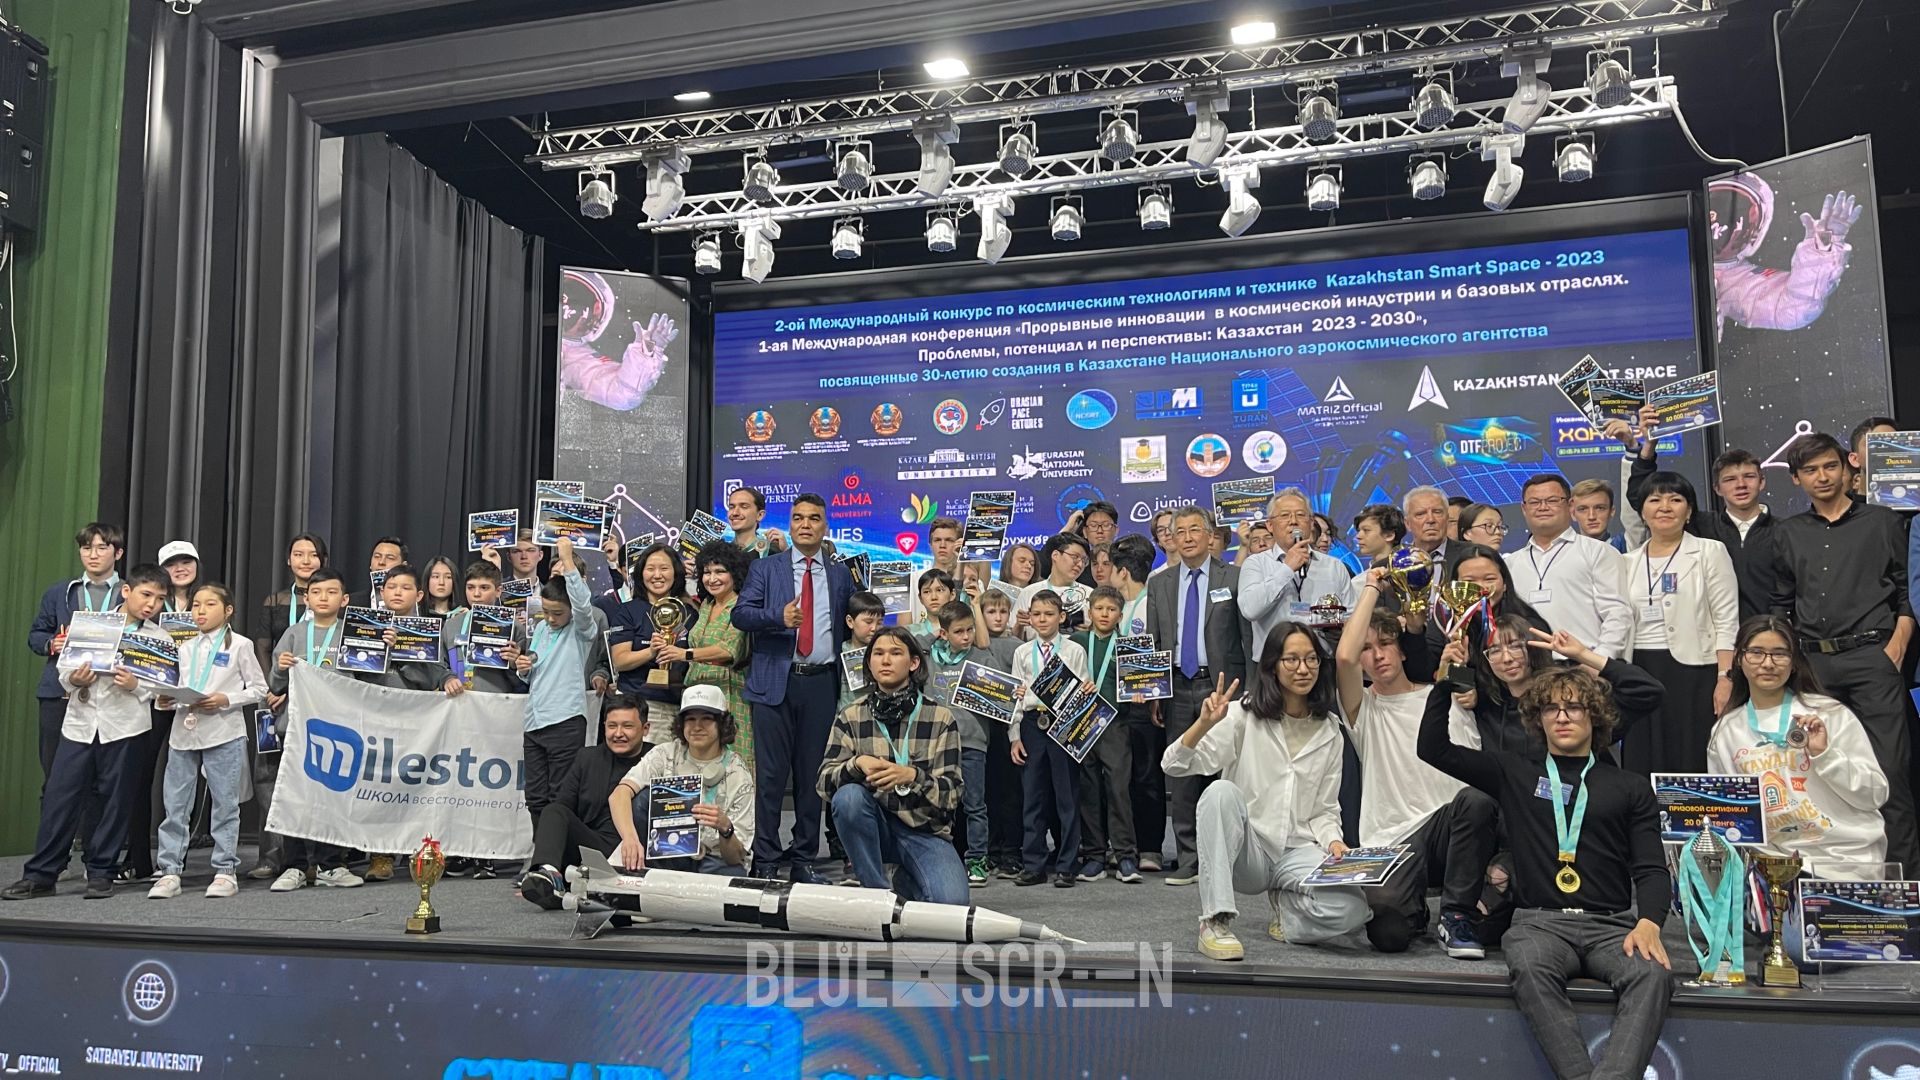  II международный конкурс Kazakhstan Smart Space